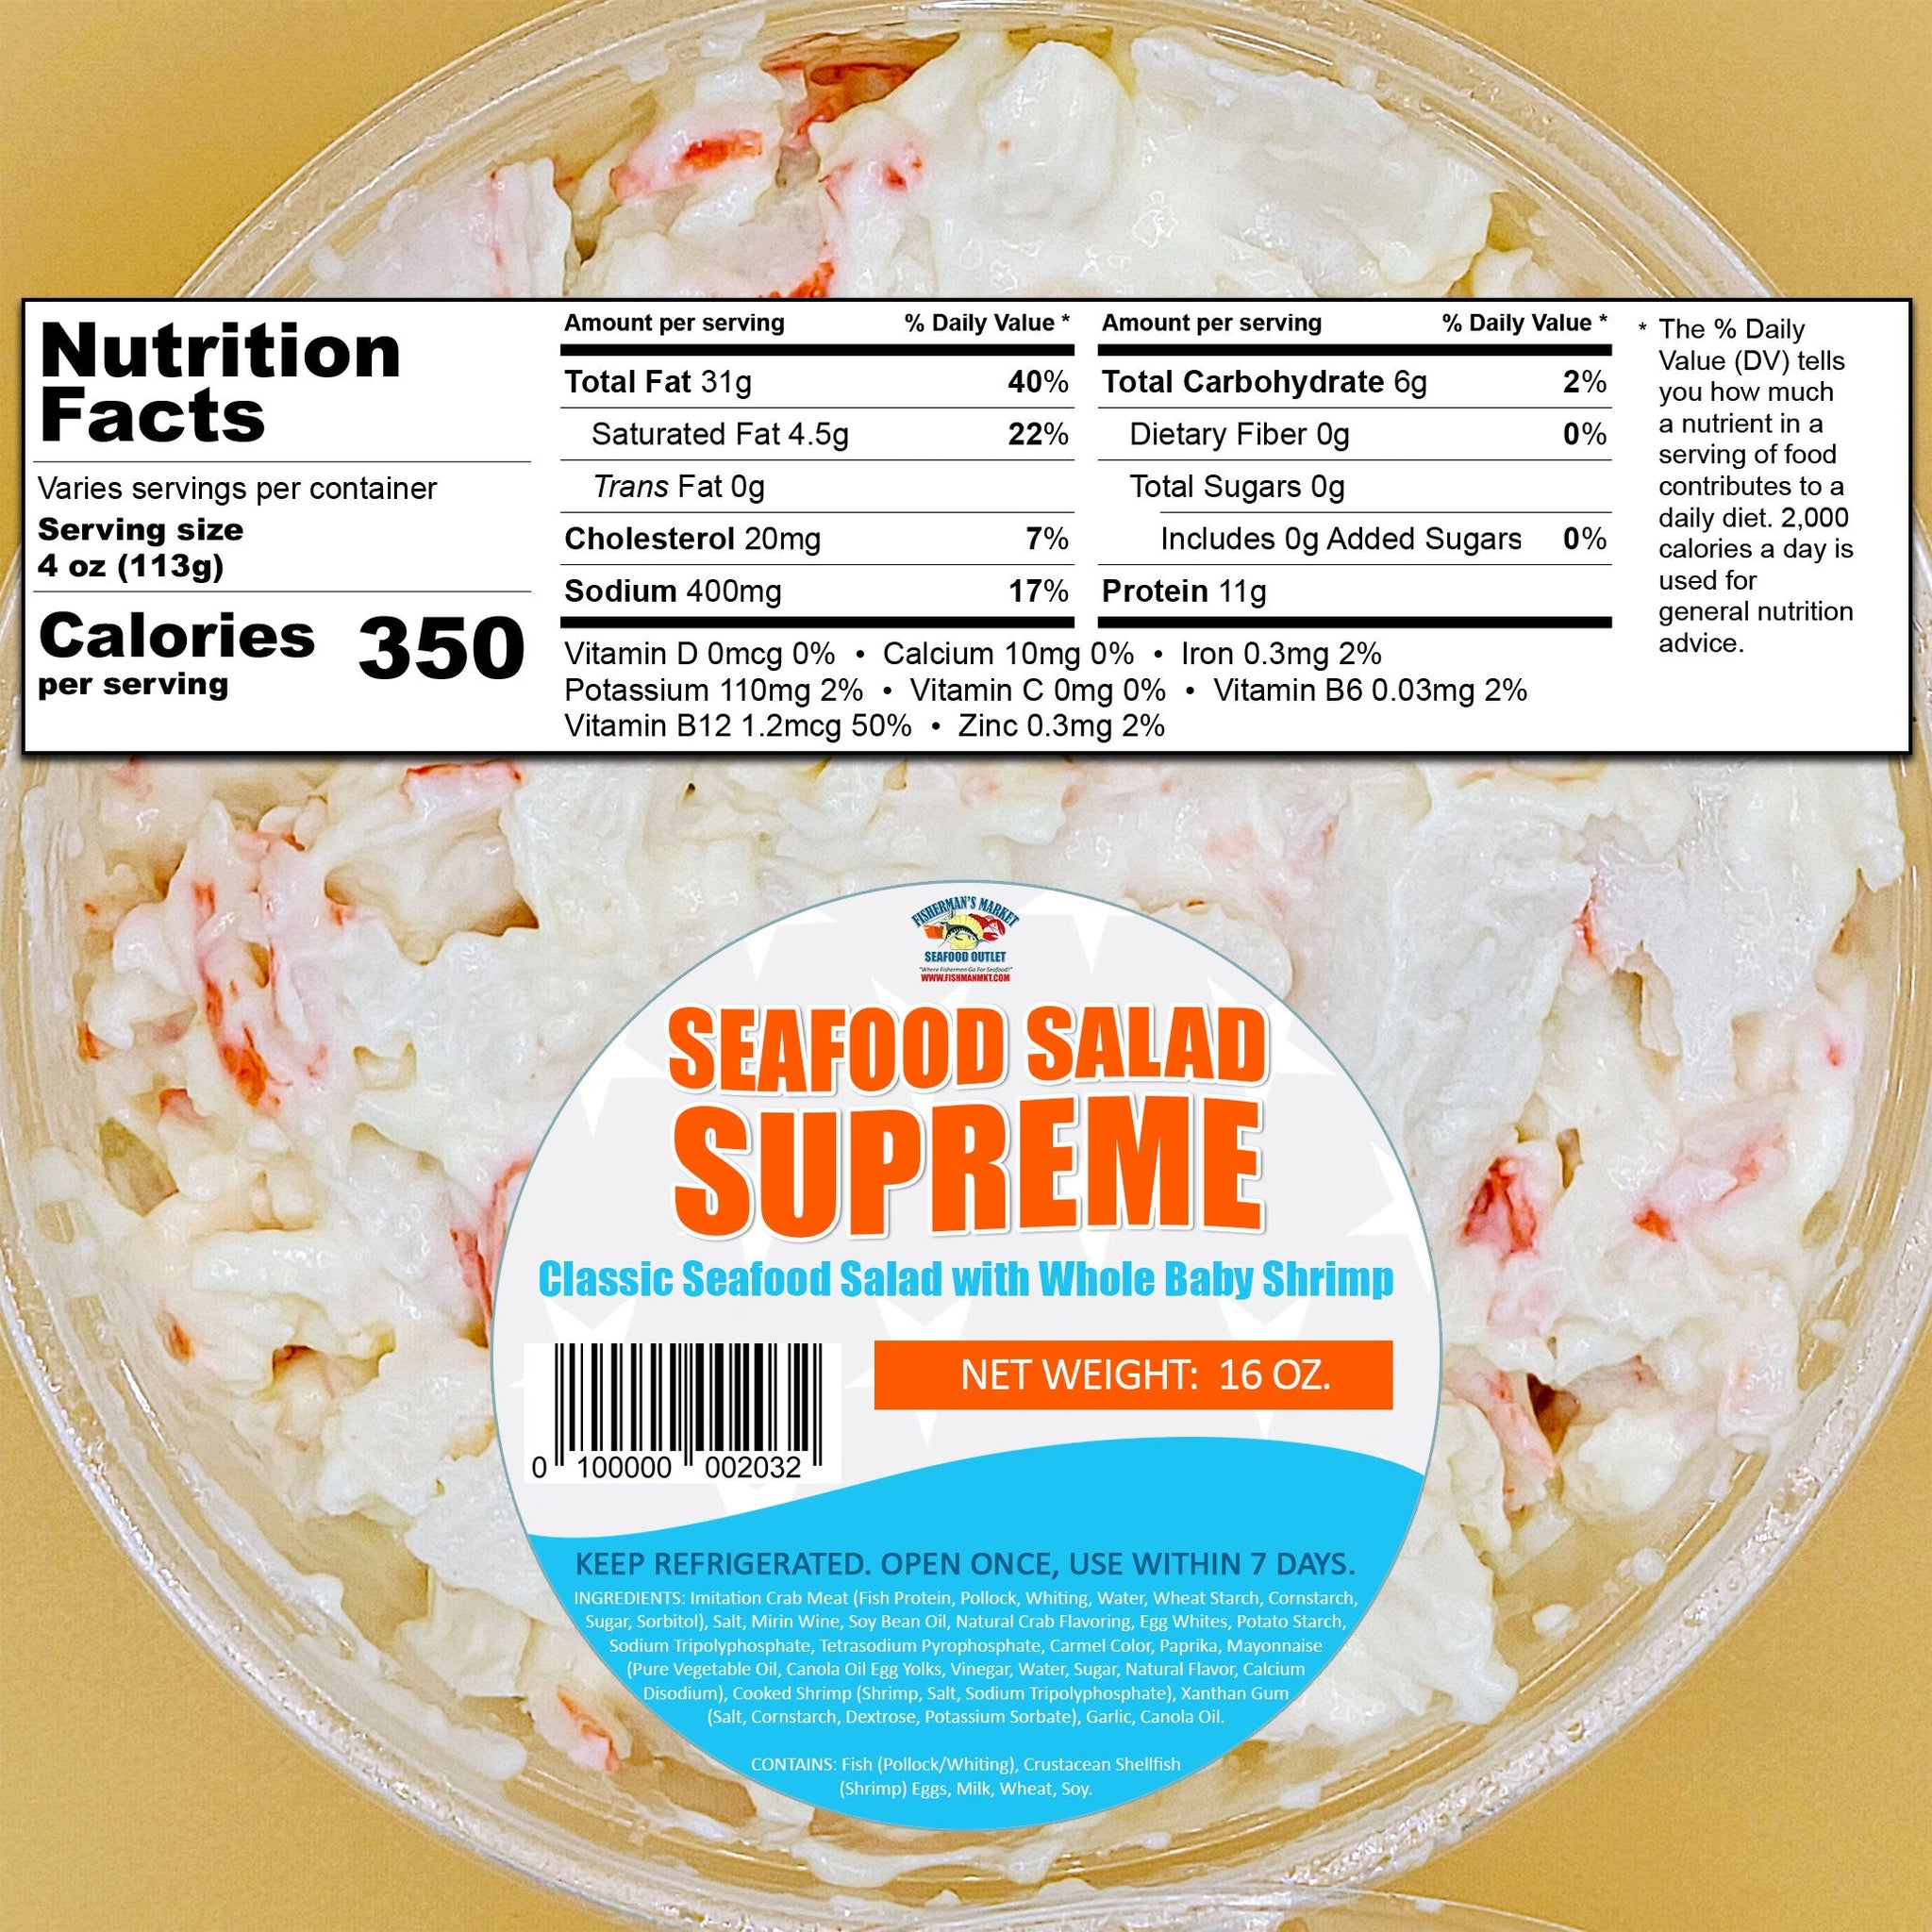 Seafood Salad Supreme – Fisherman's Market Seafood Outlet